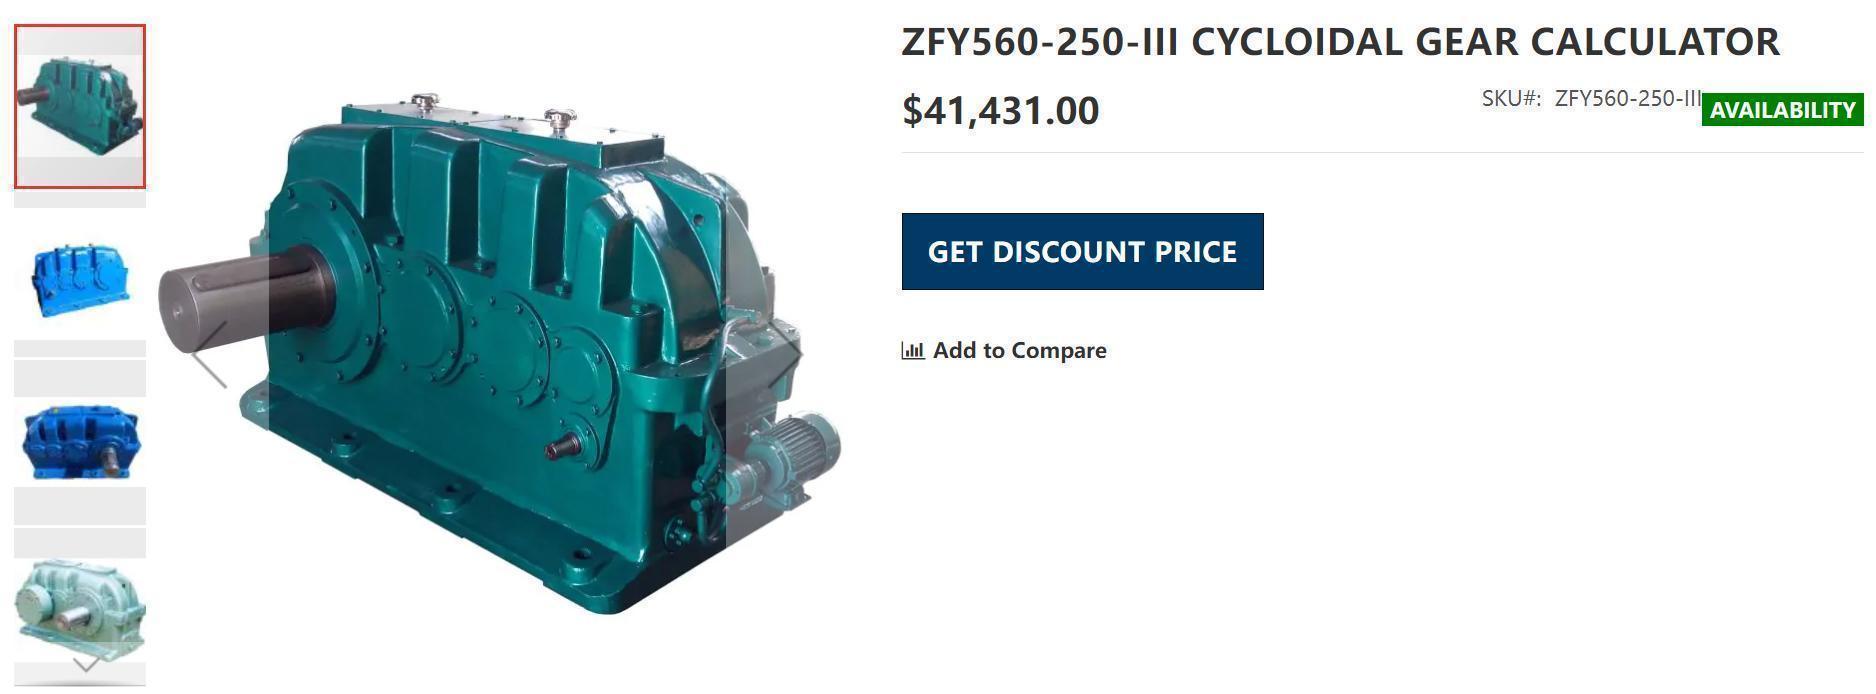 Fabricant-ZFY560-250-III